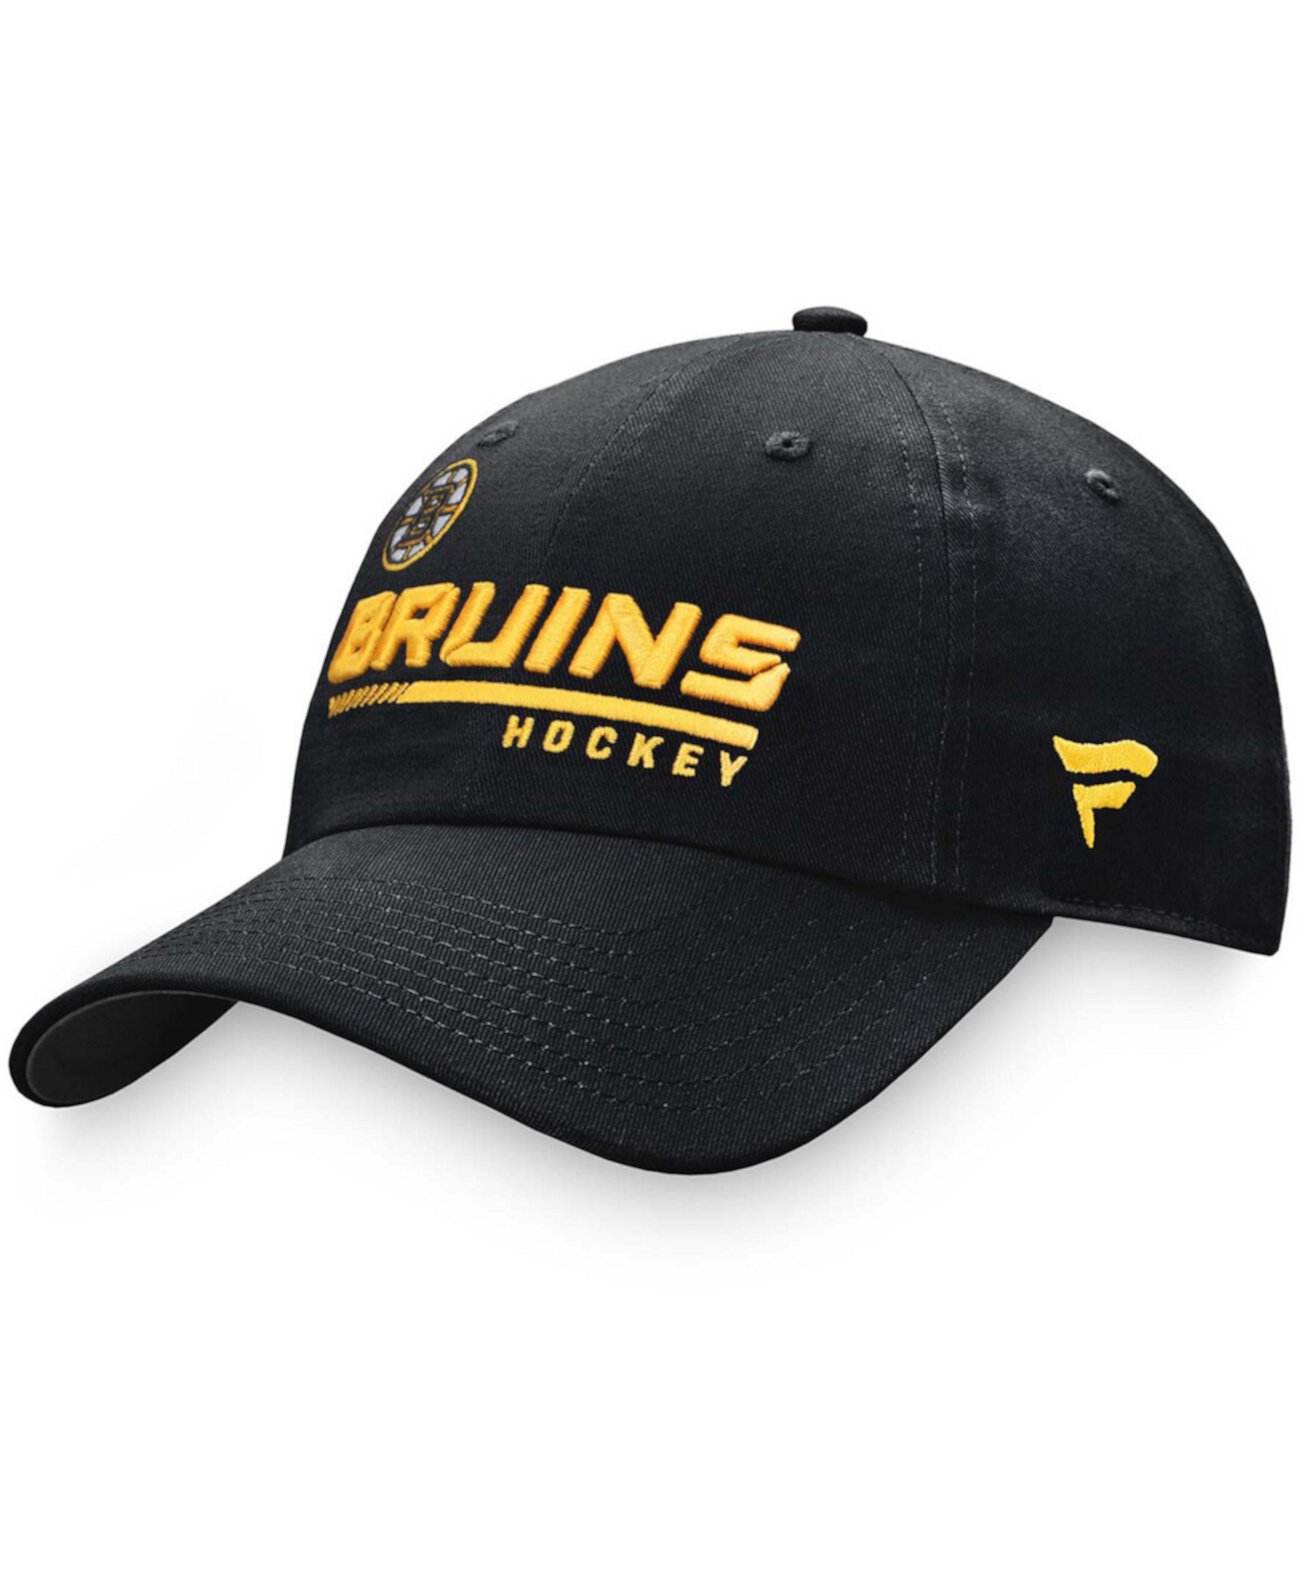 Мужская регулируемая кепка Boston Bruins Authentic Pro Locker Room под брендом Fanatics Lids